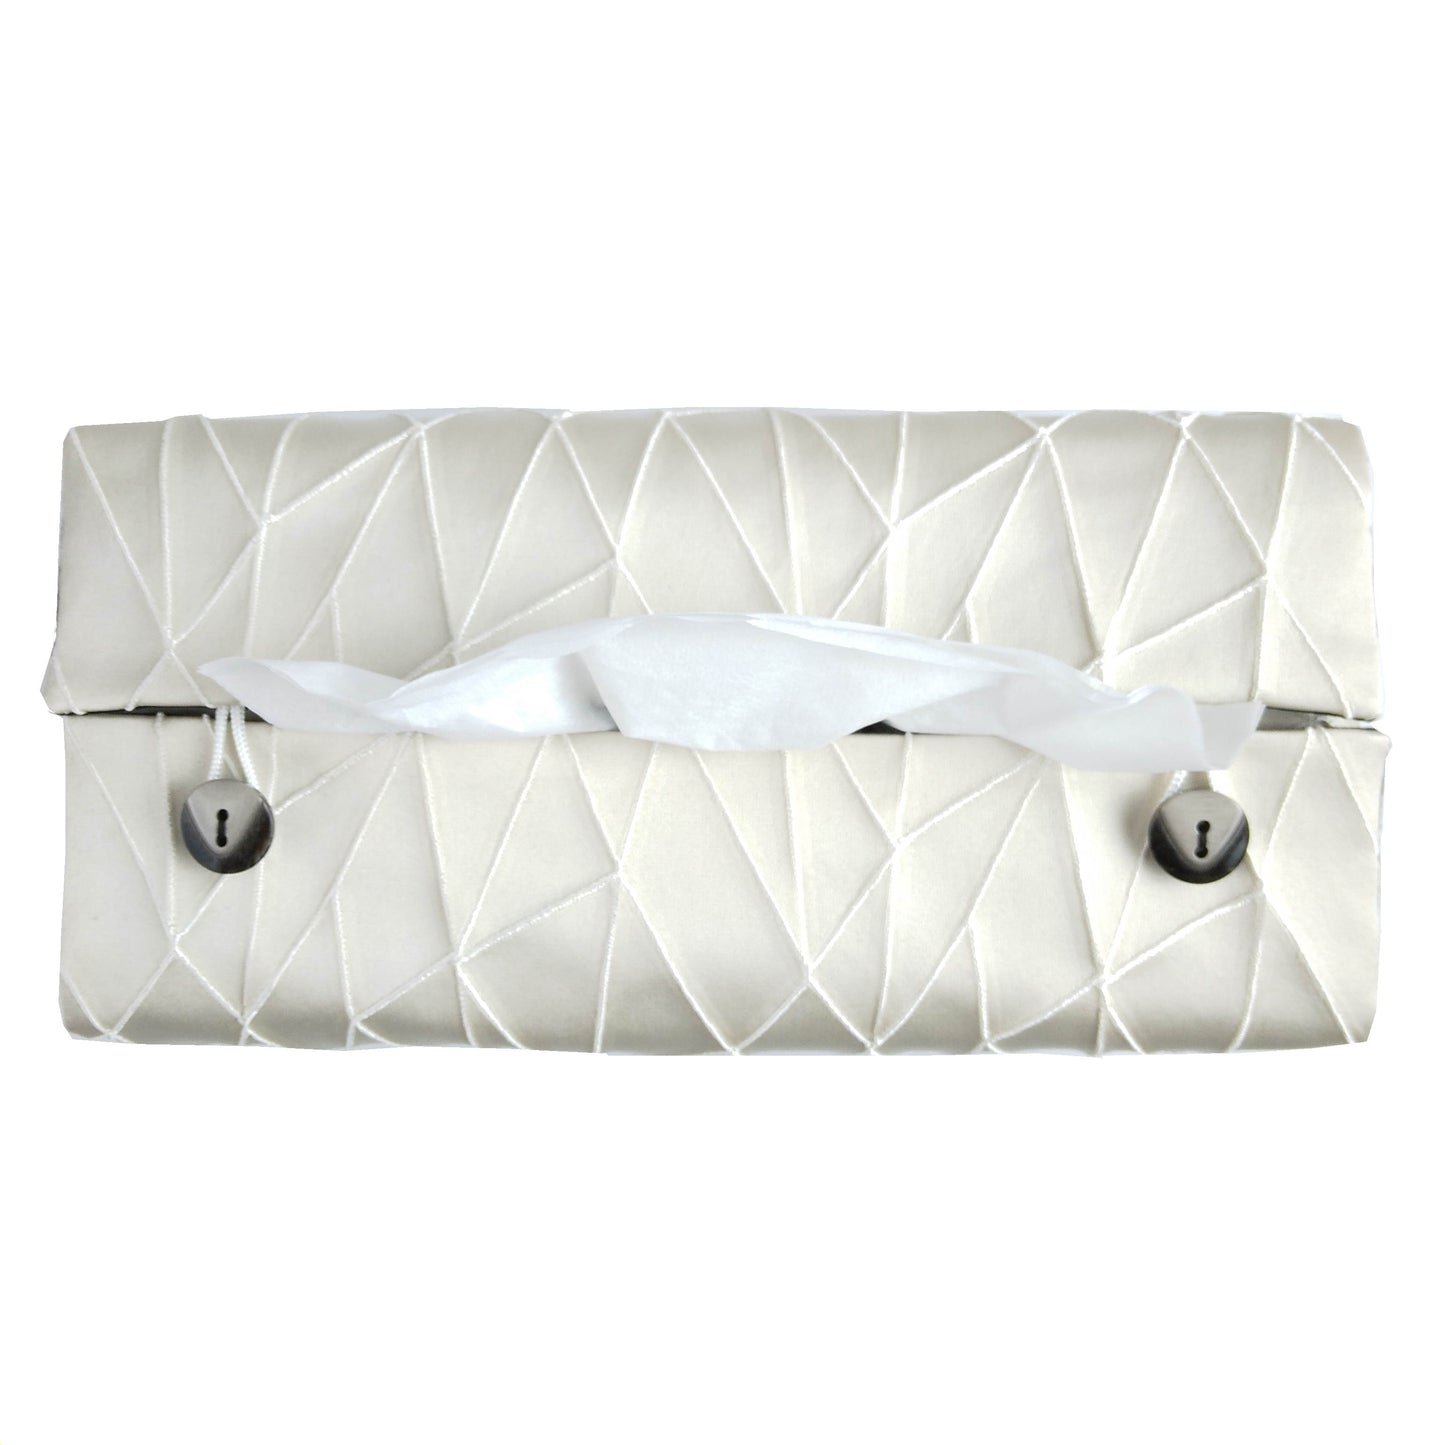 Rectangular Fabric Tissue Box Cover - Crackle Design on Cream